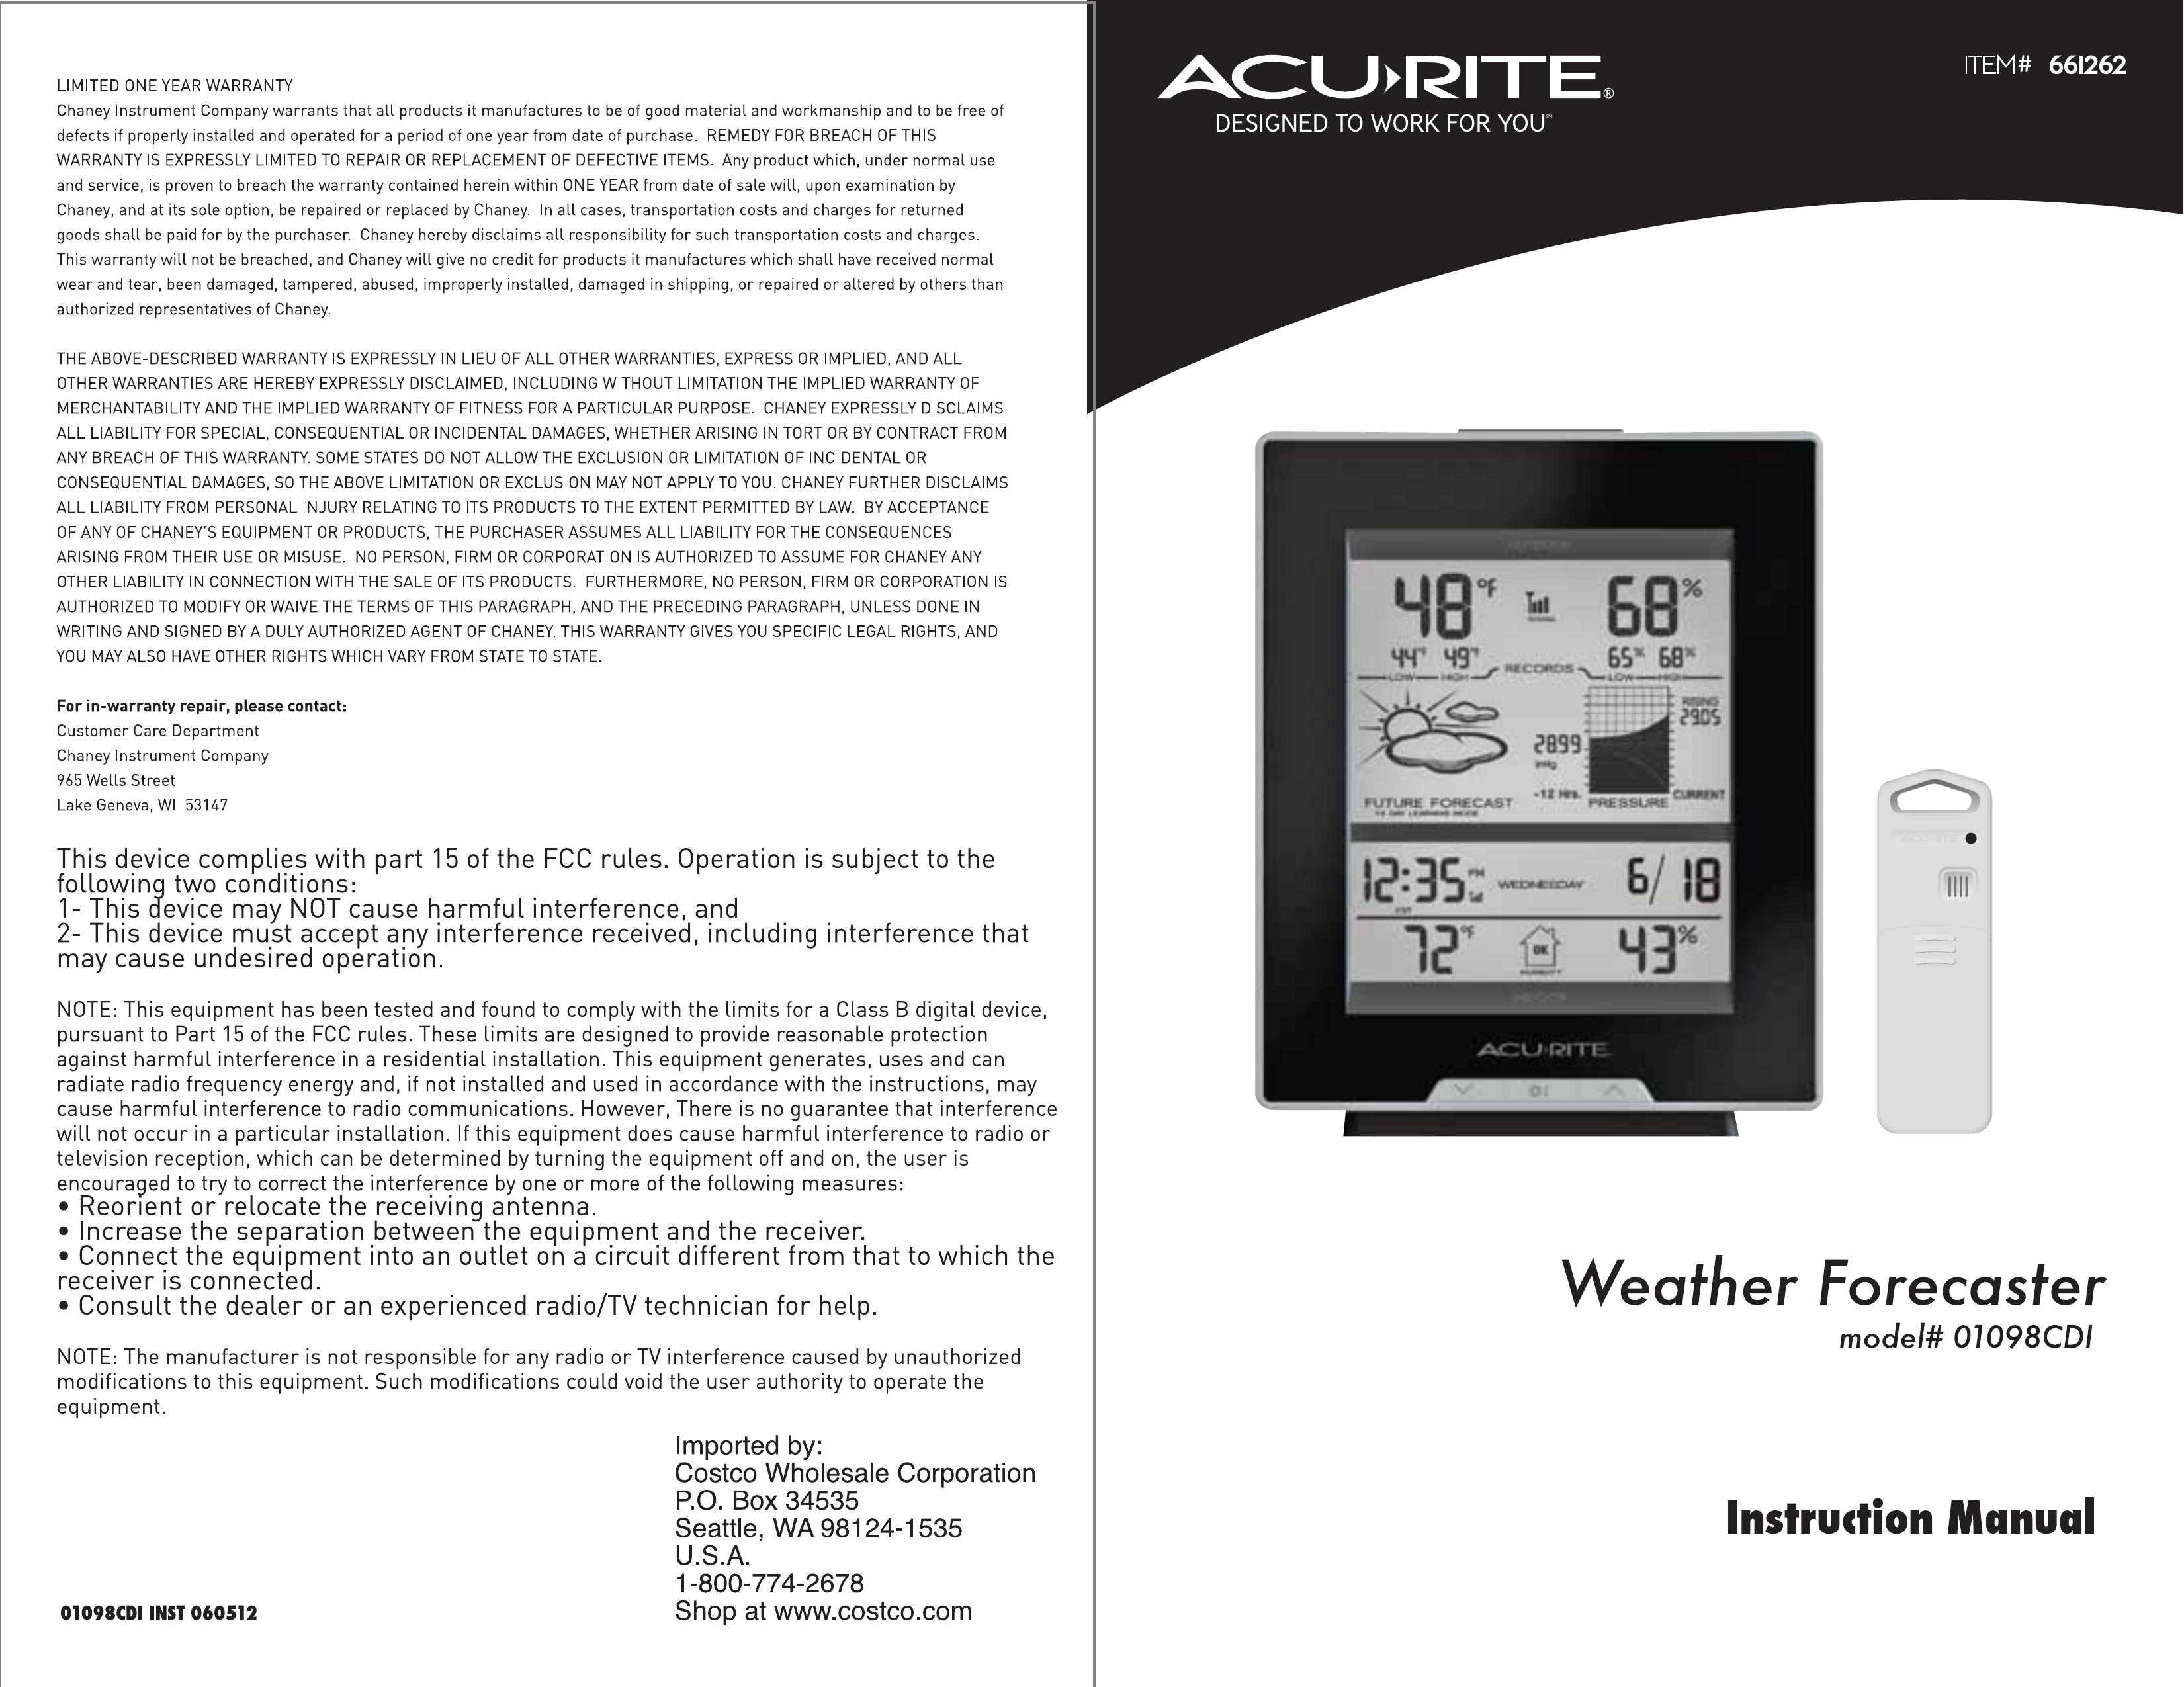 Acu-Rite 01098CDI Weather Radio User Manual